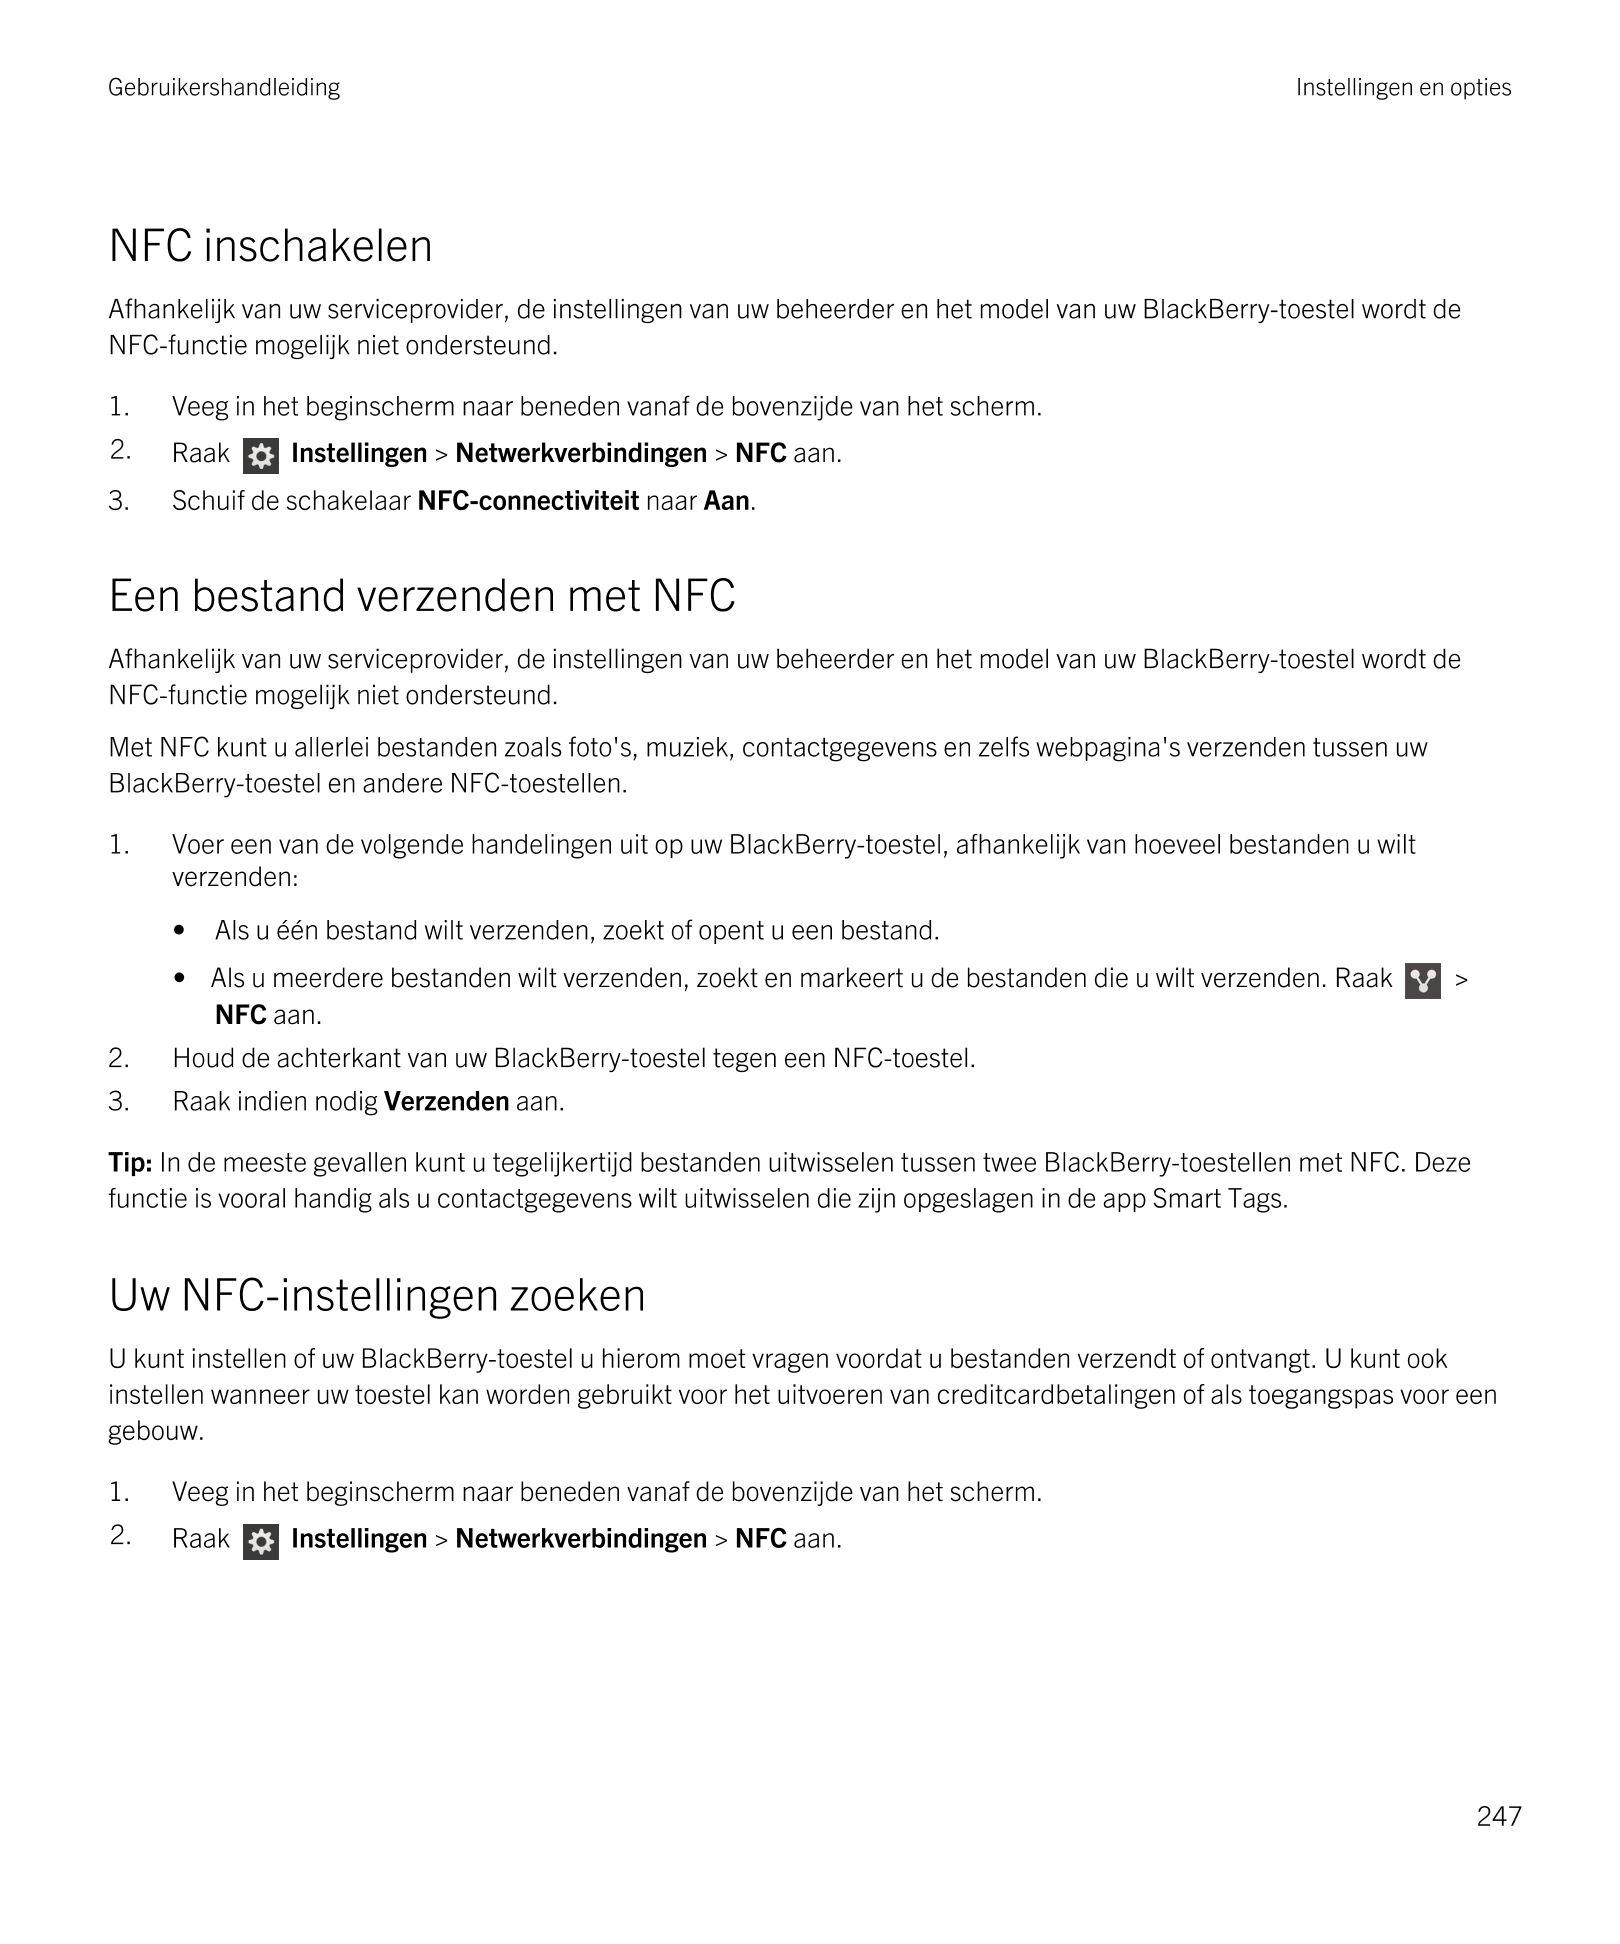 Gebruikershandleiding Instellingen en opties
NFC inschakelen
Afhankelijk van uw serviceprovider, de instellingen van uw beheerde